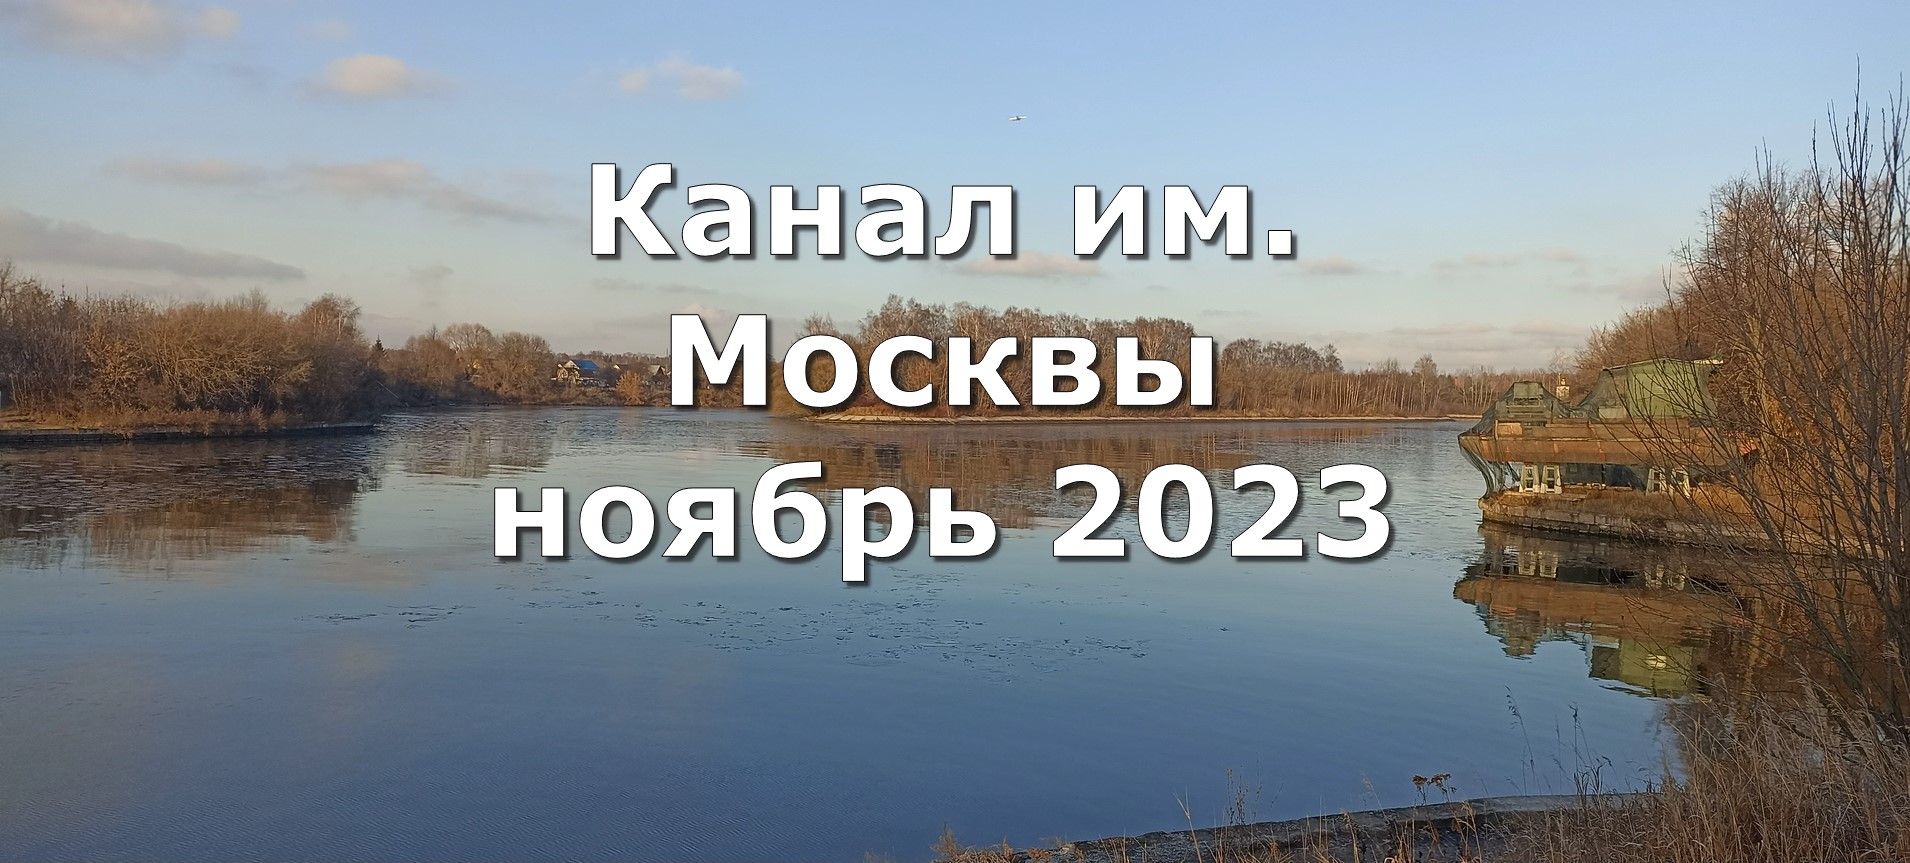 Канал им. Москвы ноябрь 2023